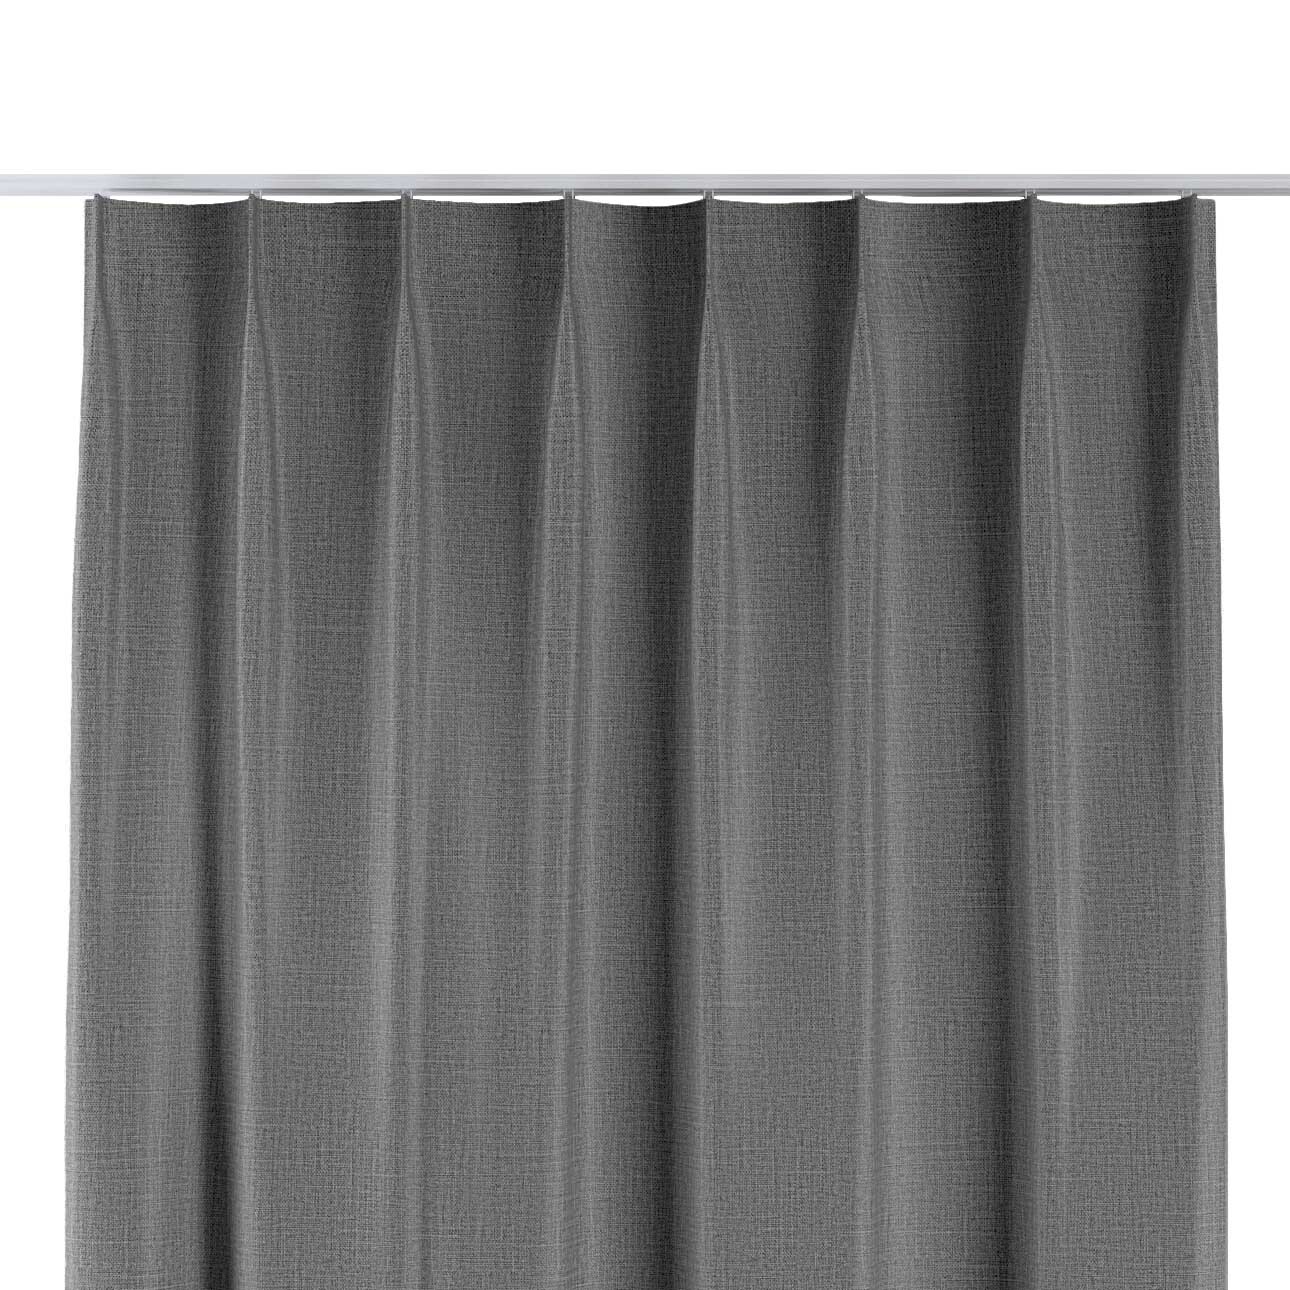 Vorhang mit flämischen 1-er Falten, dunkelgrau, Blackout (verdunkelnd) (269 günstig online kaufen